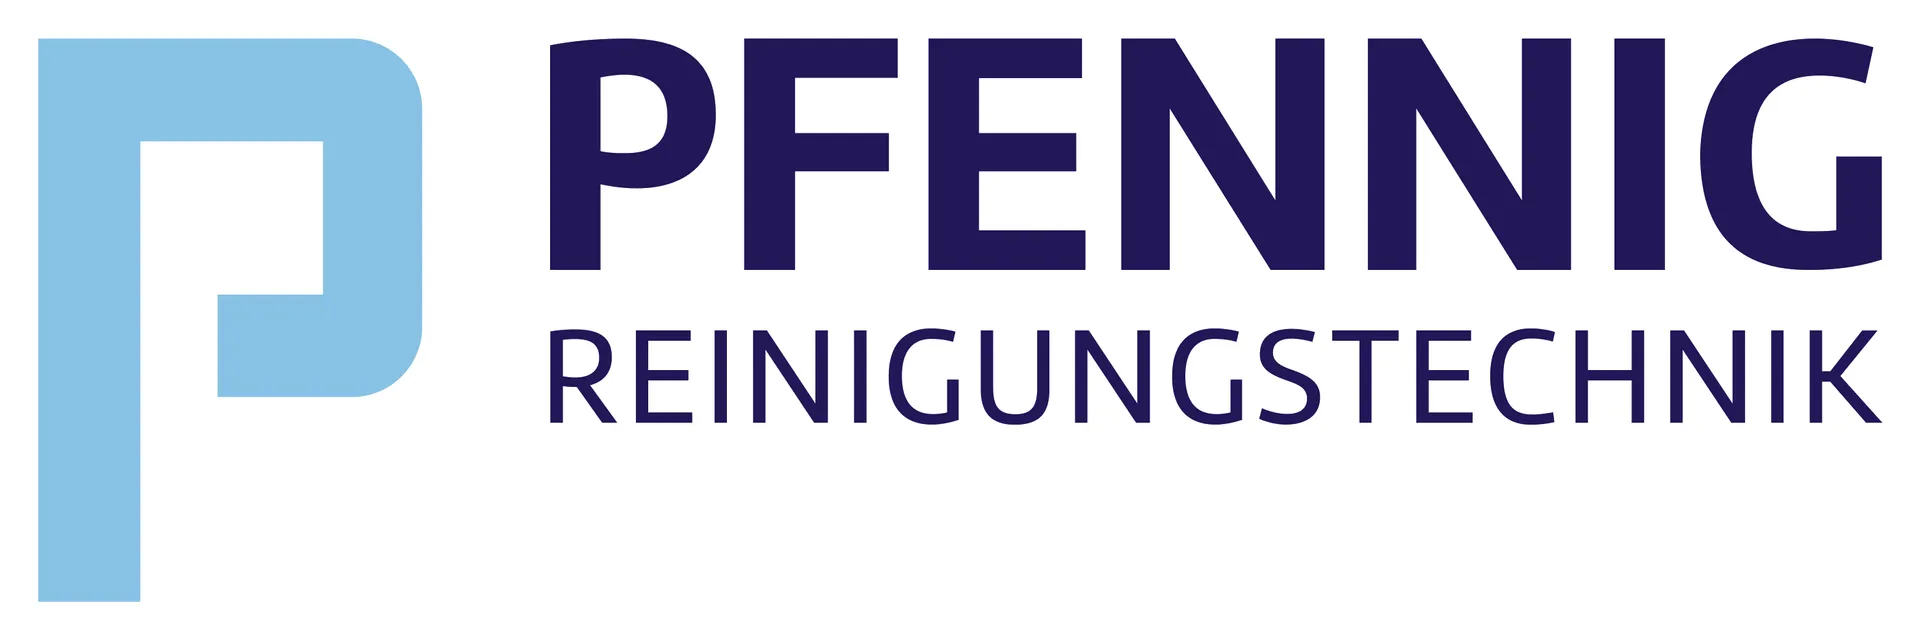 PFENNIG Reinigungstechnik GmbH